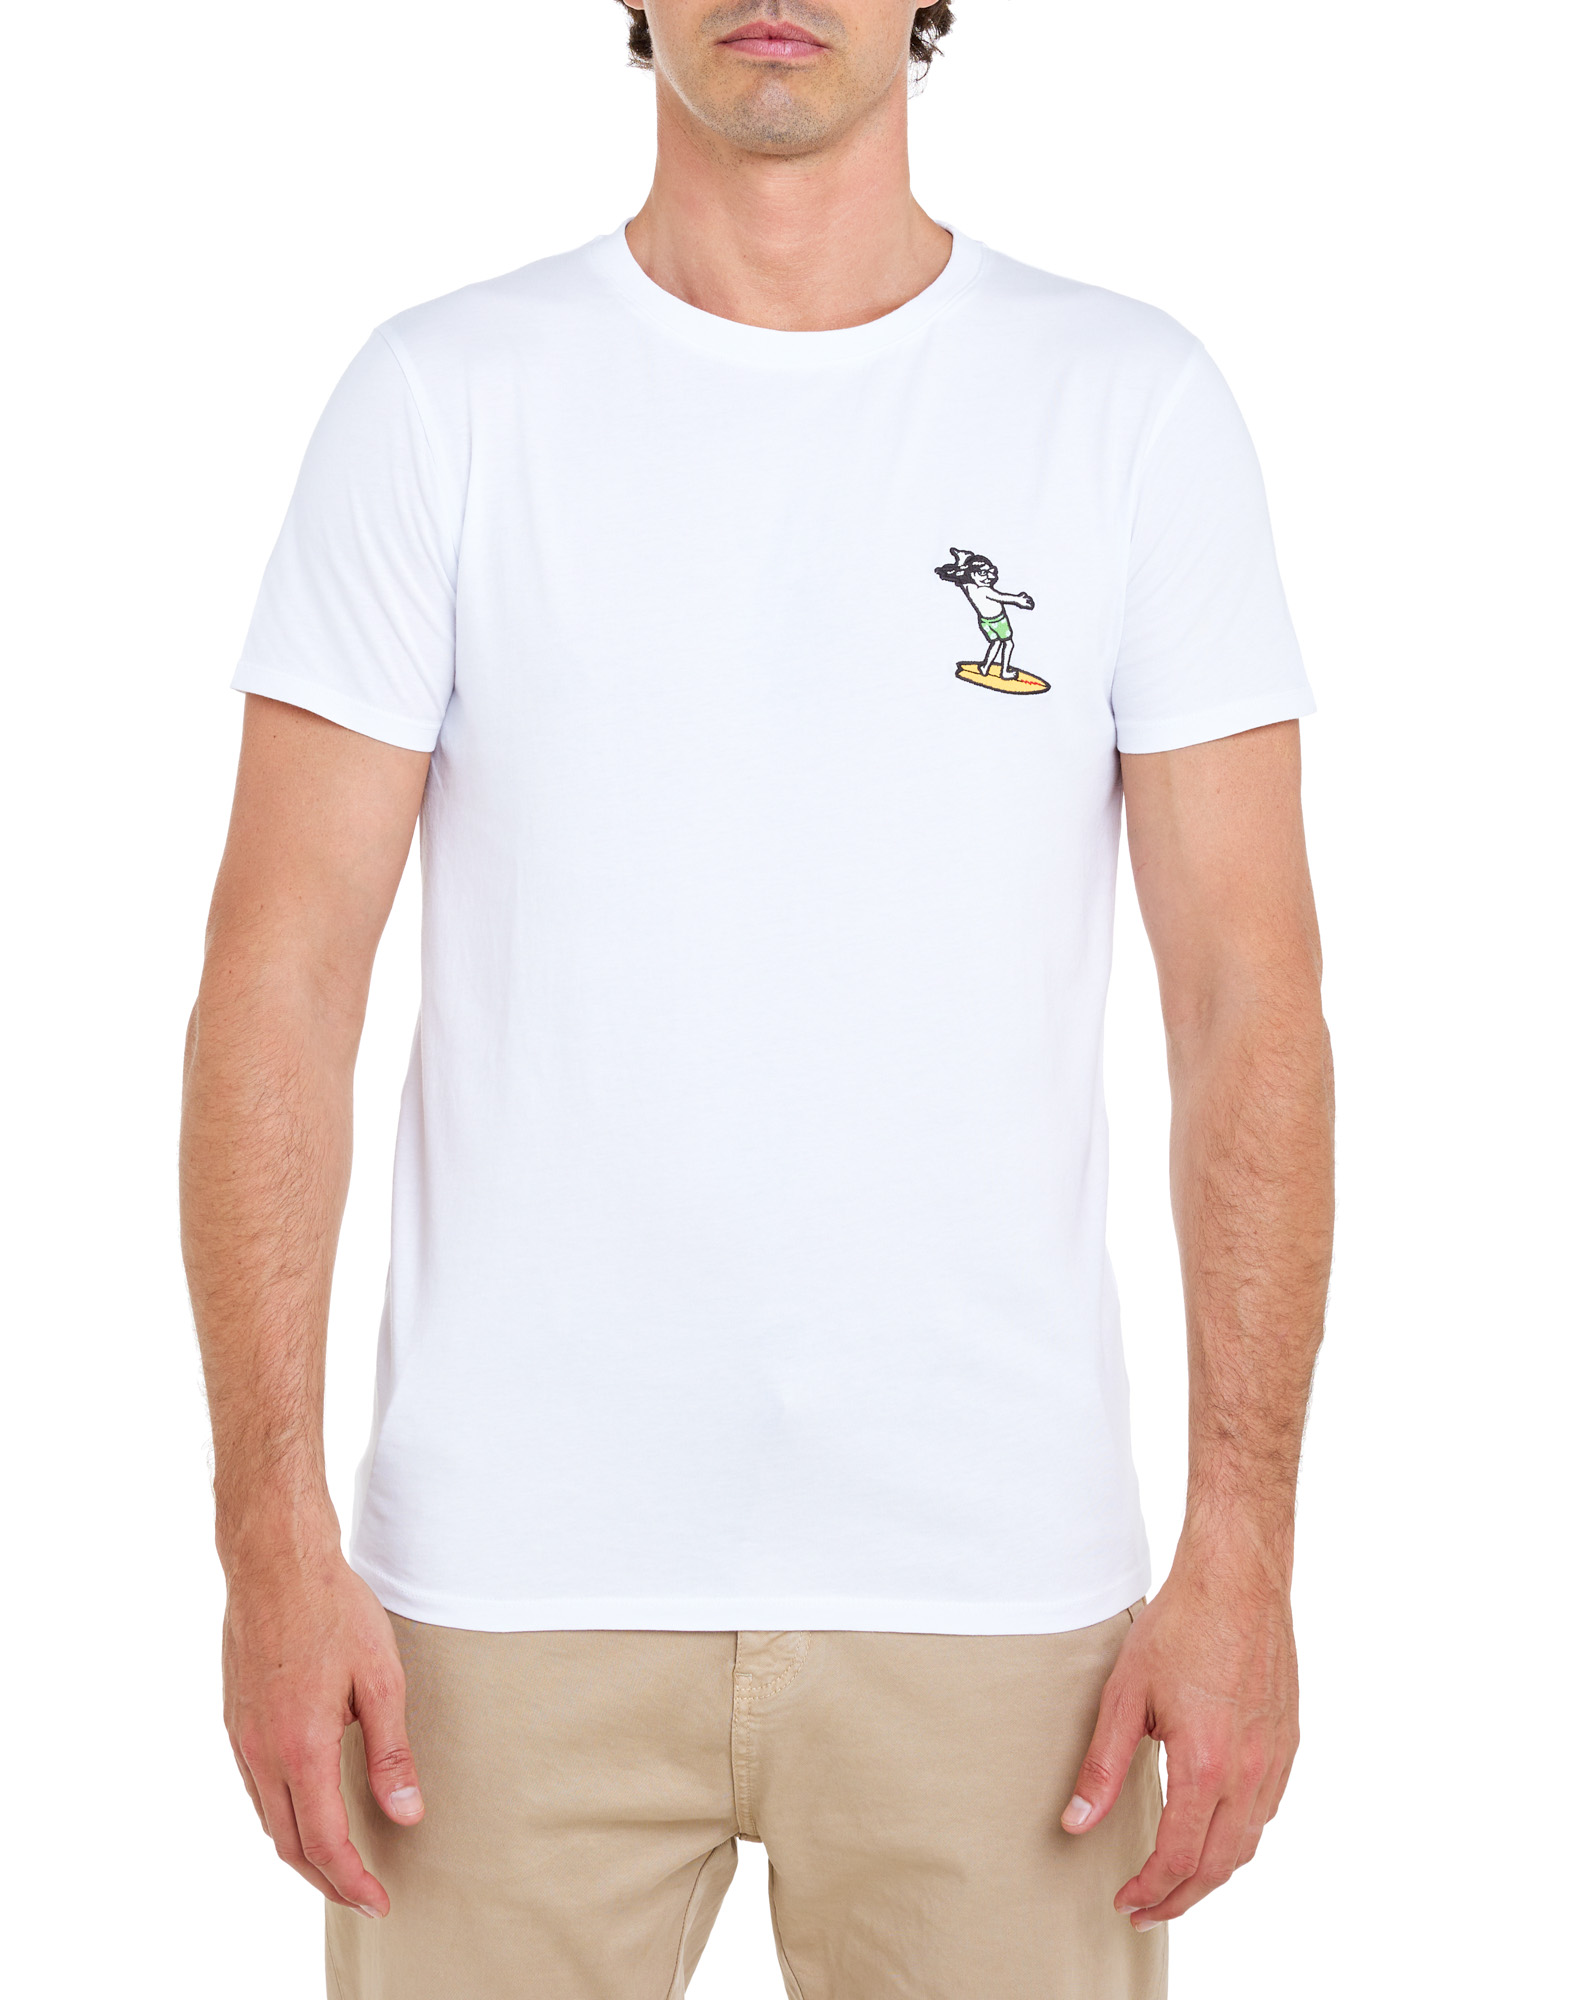 T-shirt homme PARTCHCHILLSURFHITE